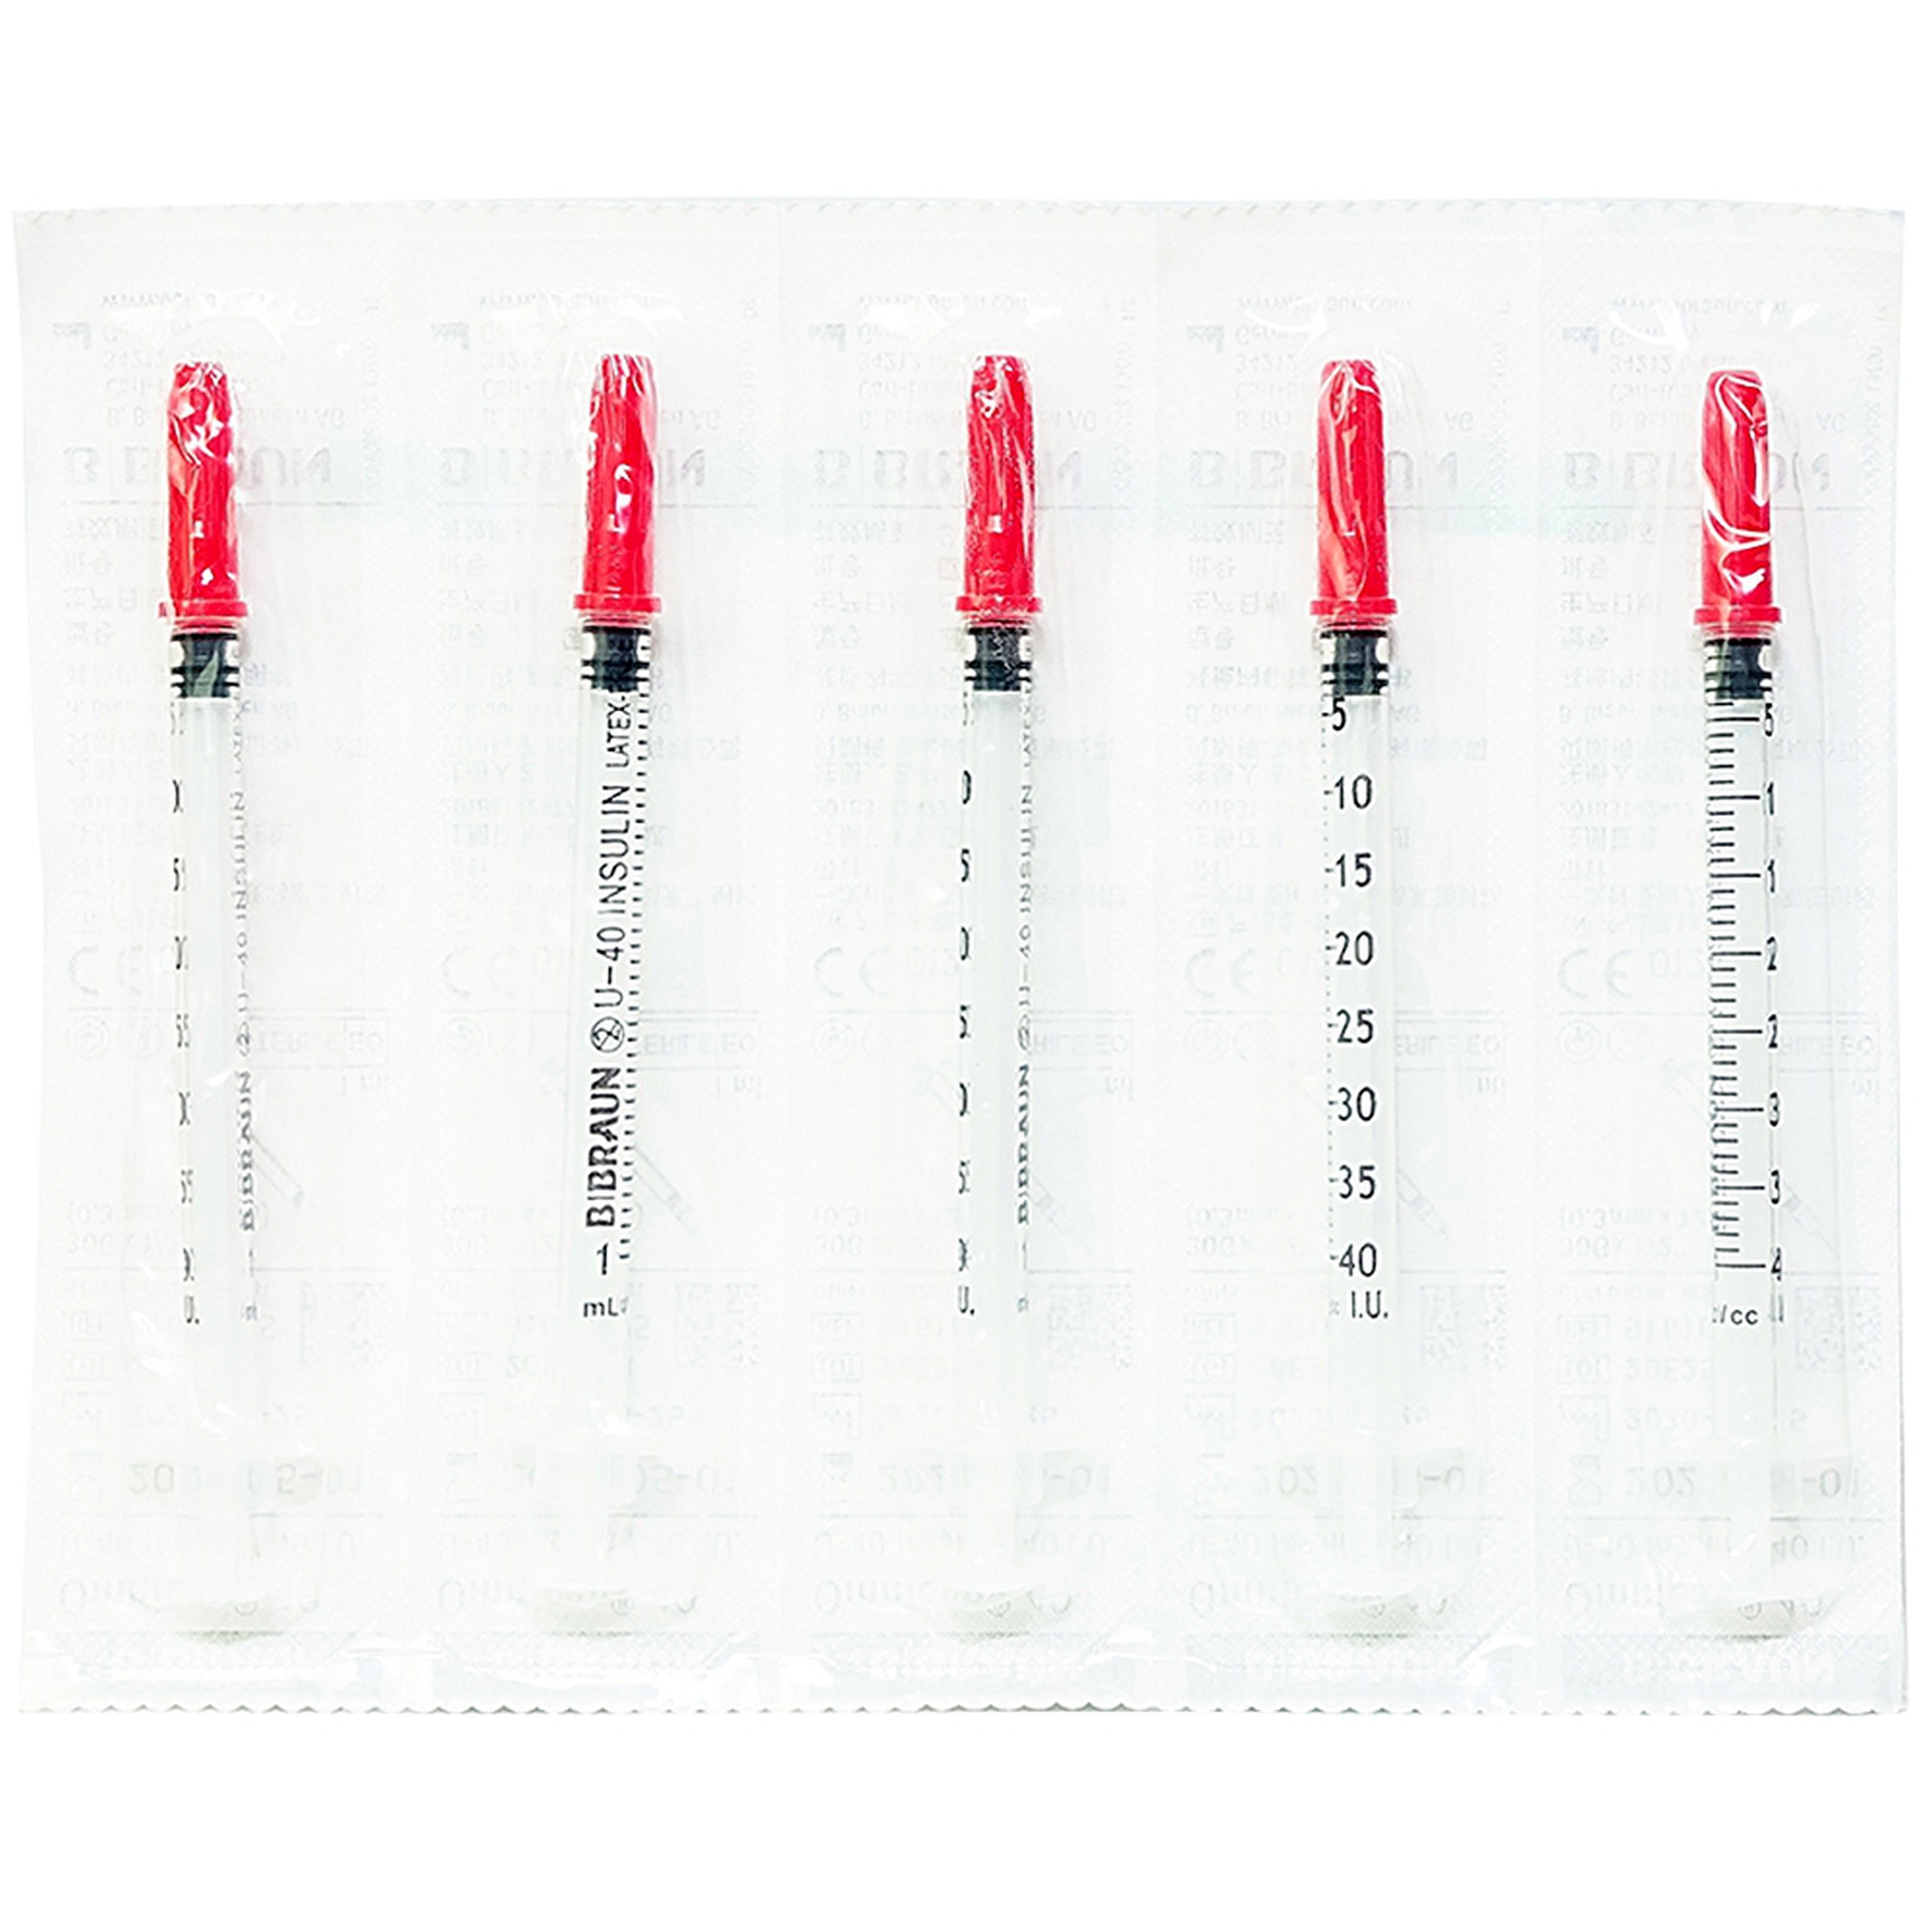 Kim tiêm tiểu đường B.Braun Omnican 1ml/40 I.U màu đỏ dùng cho người tiểu đường (100 cái)